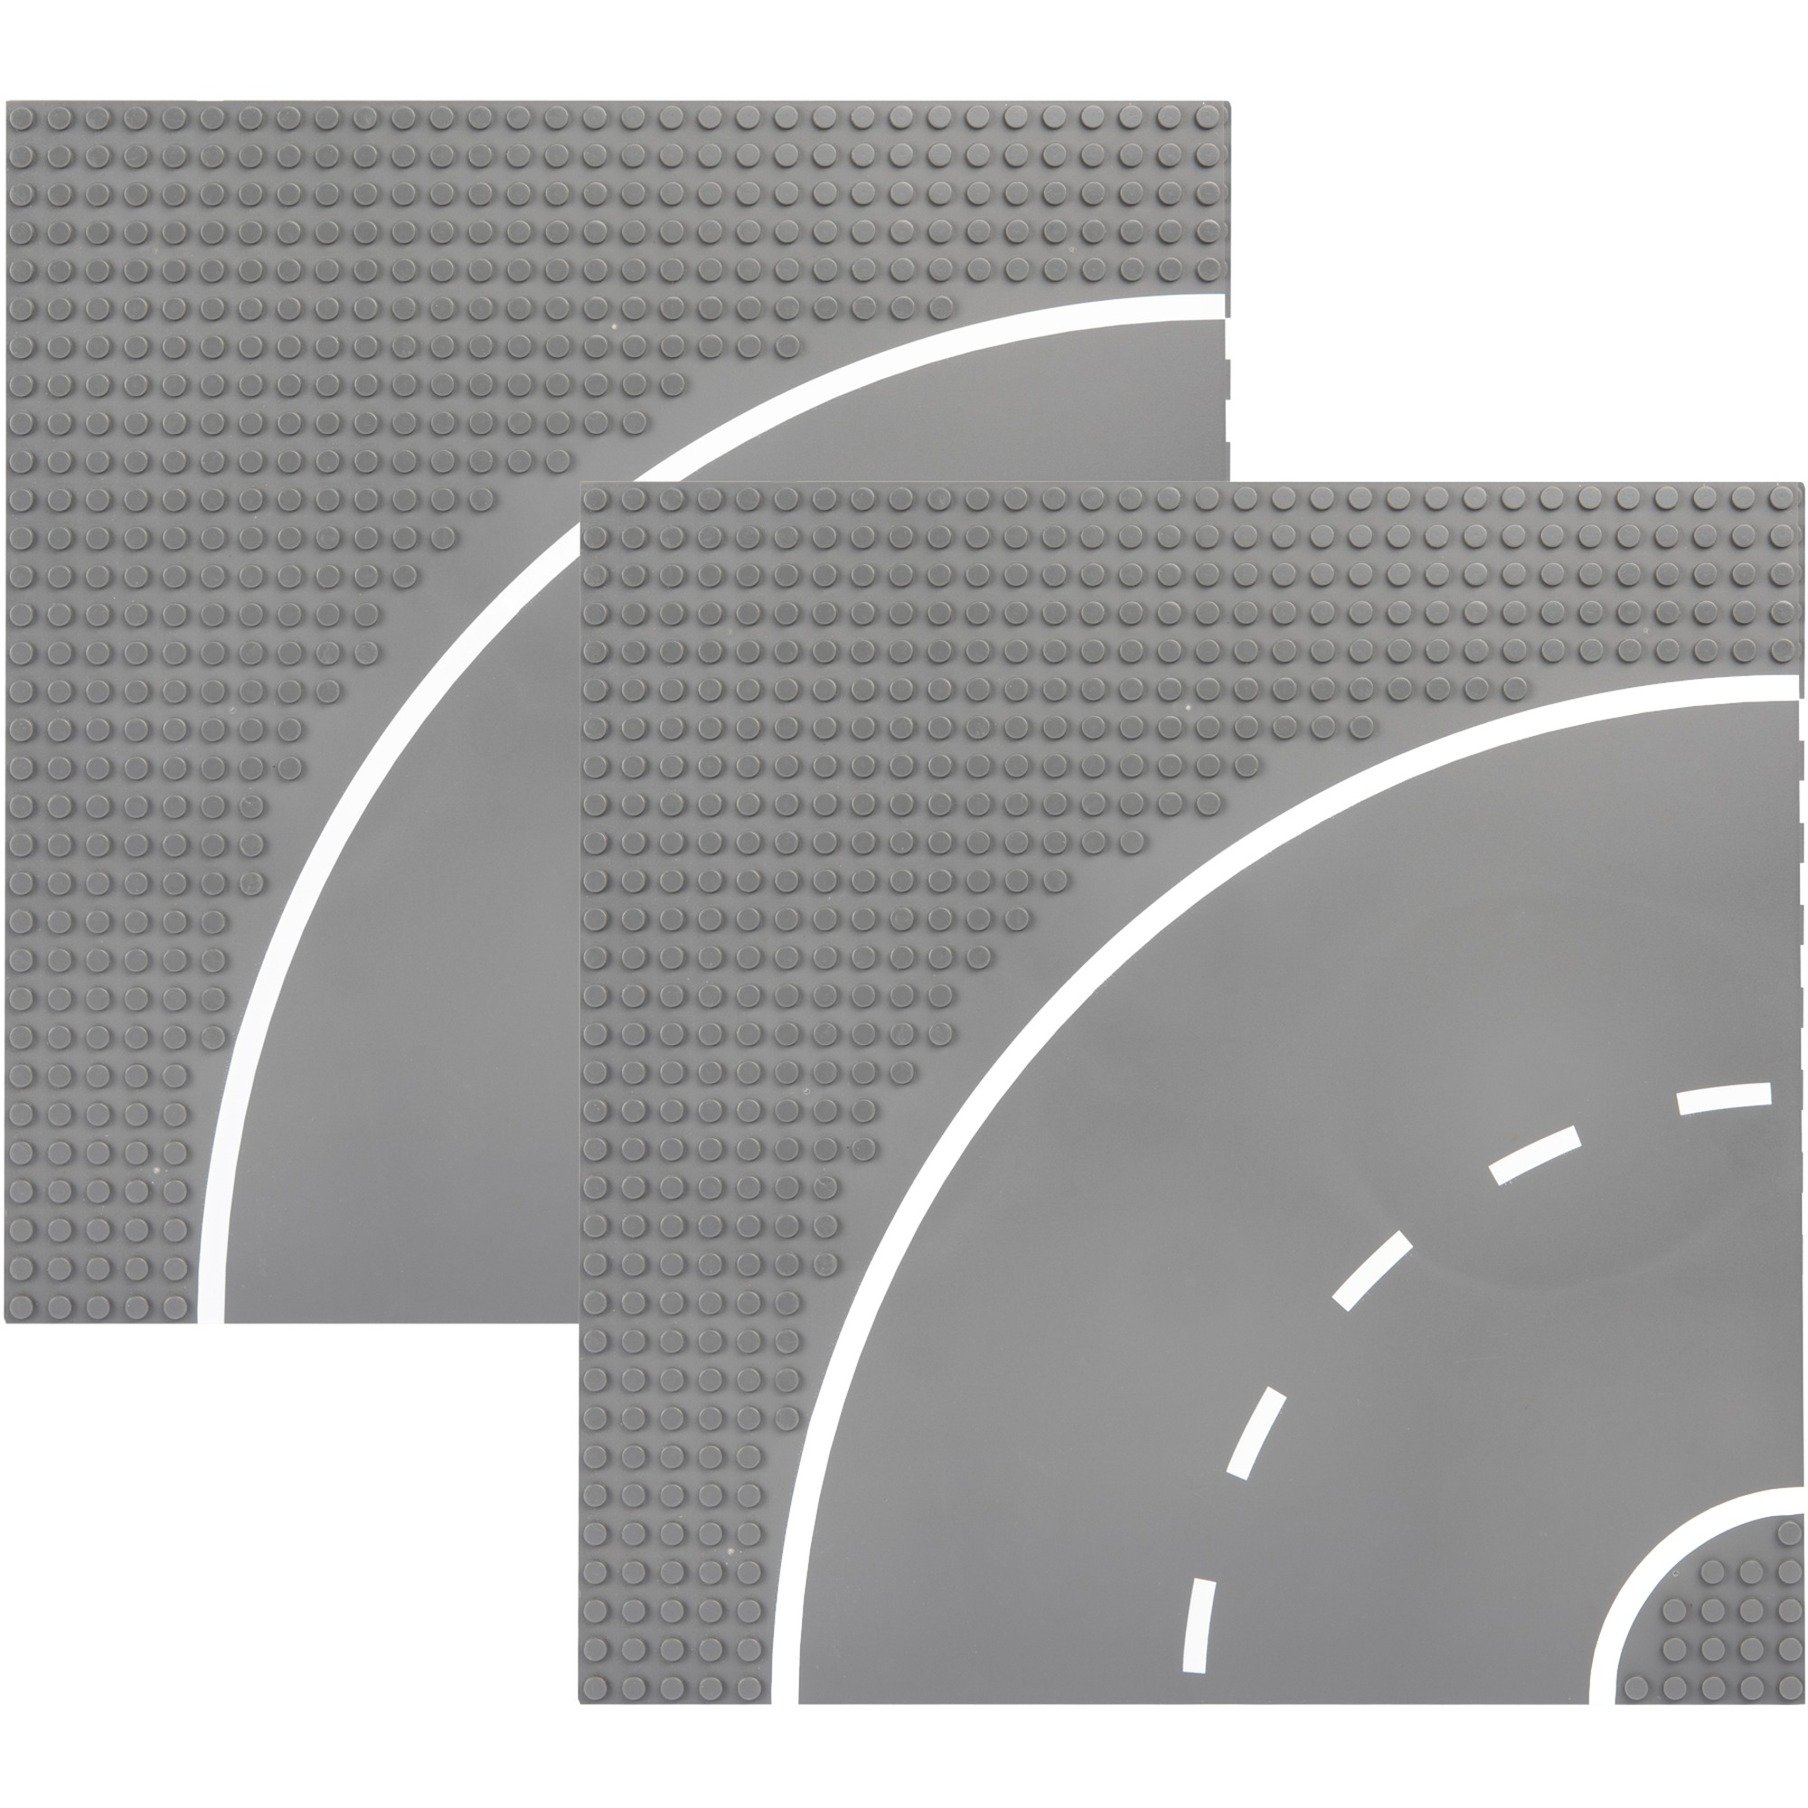 Image of Alternate - Straßenplatte 32x32 Kurven, Konstruktionsspielzeug online einkaufen bei Alternate